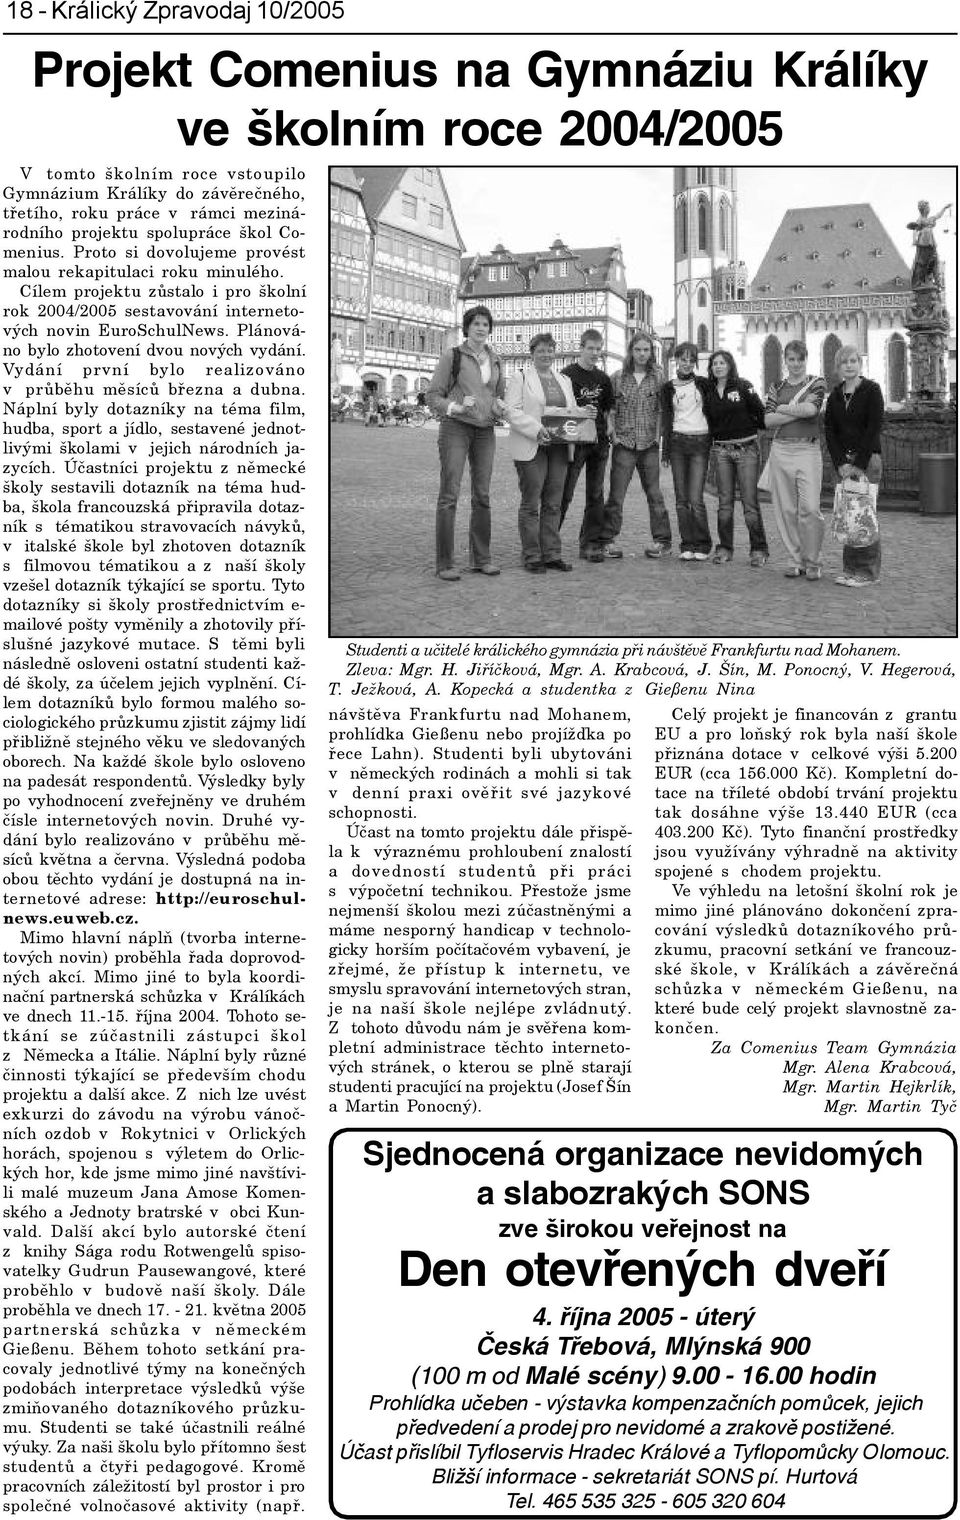 Cílem projektu zùstalo i pro školní rok 2004/2005 sestavování internetových novin EuroSchulNews. Plánováno bylo zhotovení dvou nových vydání.